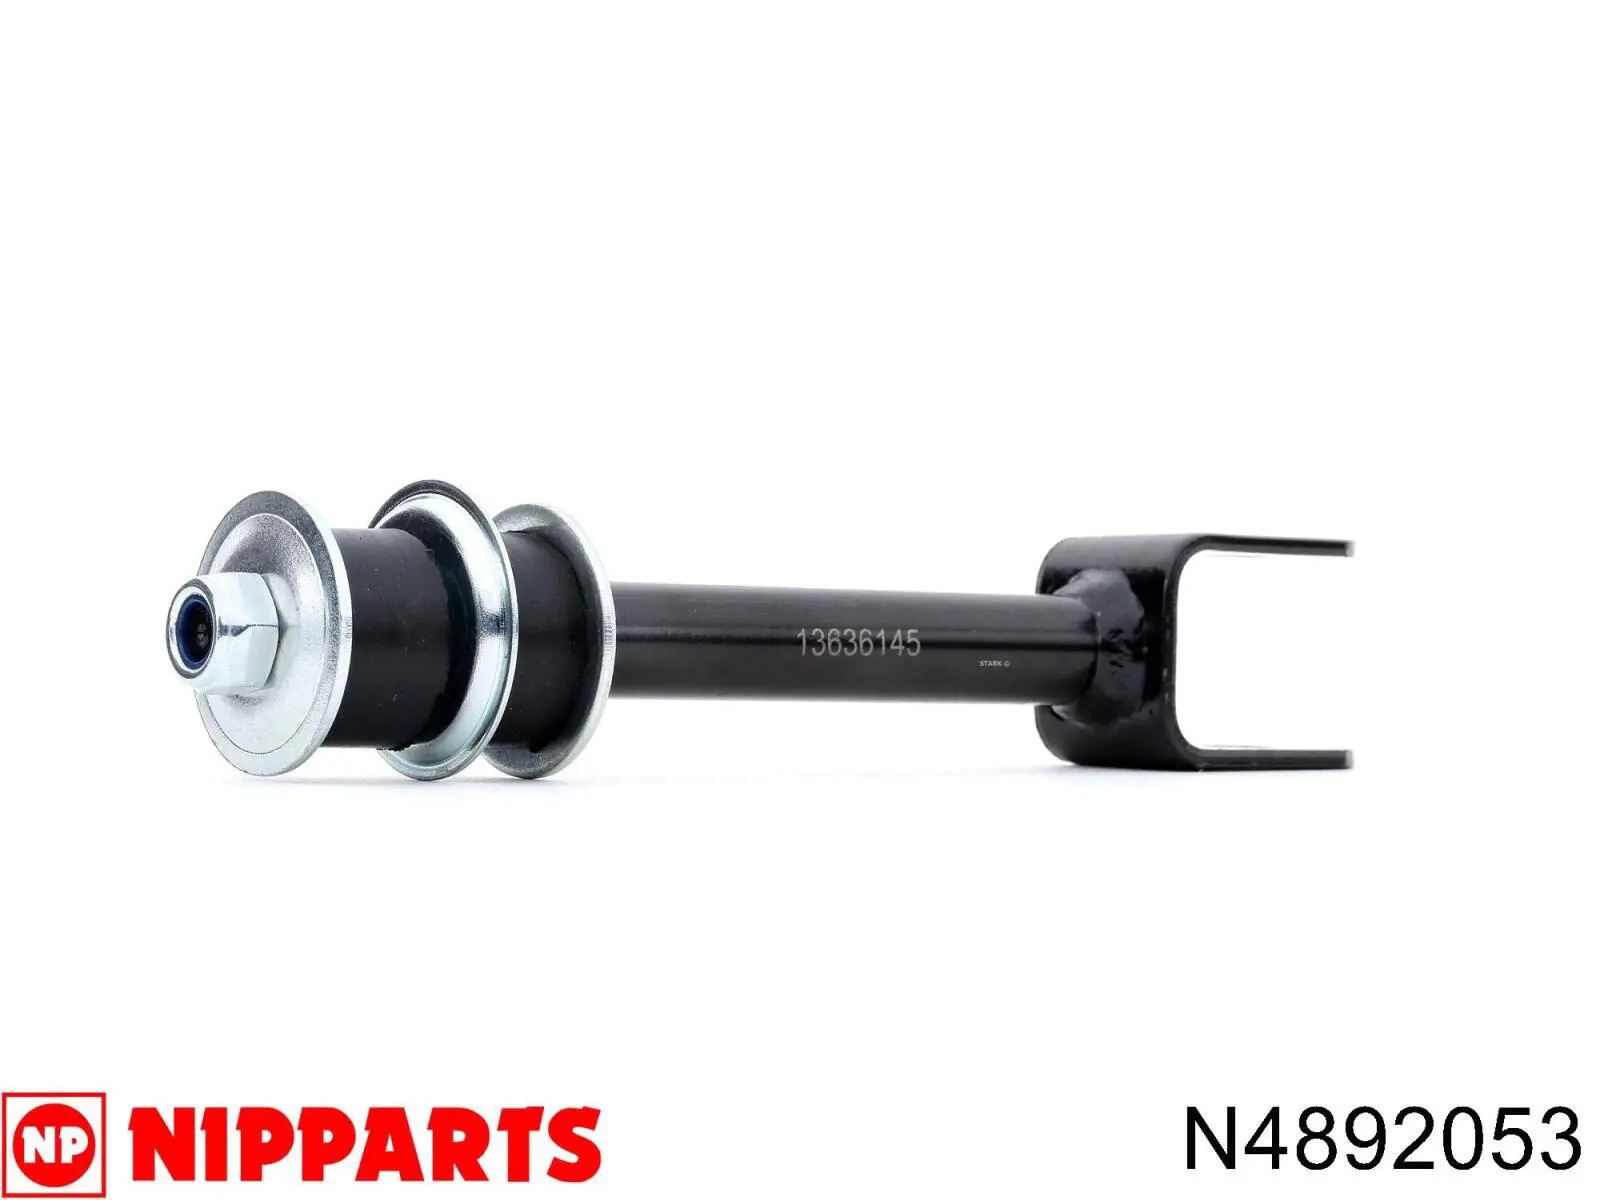 N4892053 Nipparts soporte de barra estabilizadora trasera